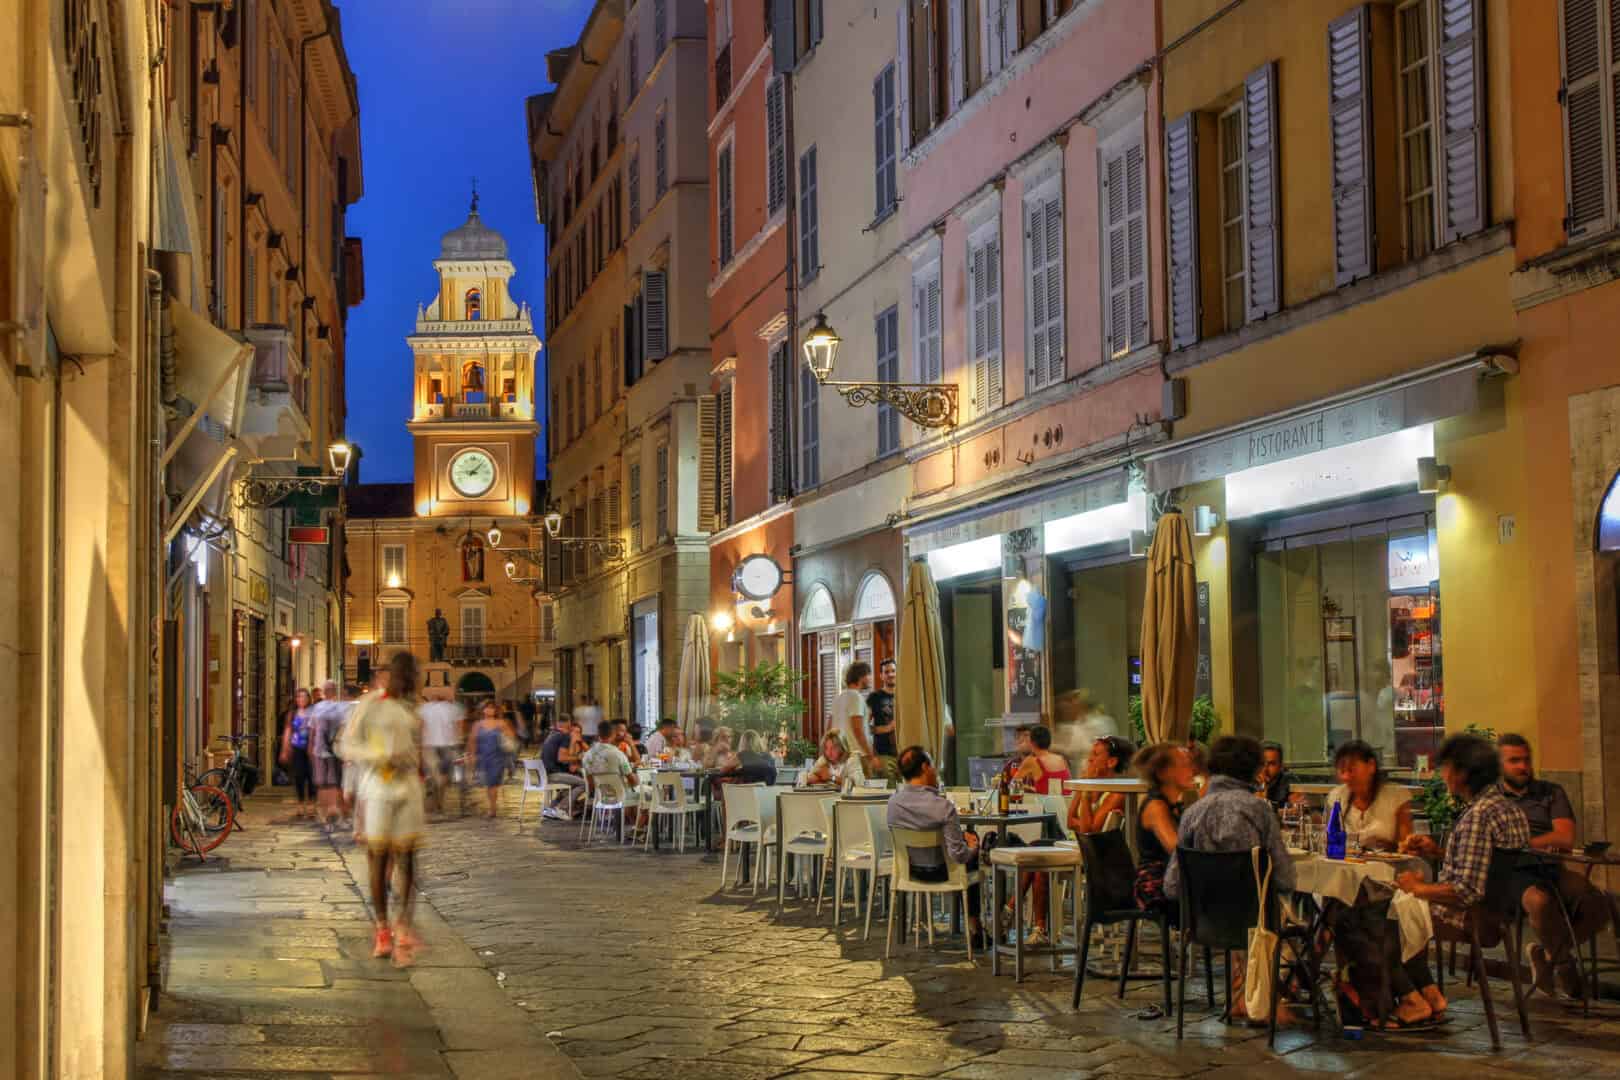 Scoprire Parma in 48 ore: un weekend nella capitale del gusto